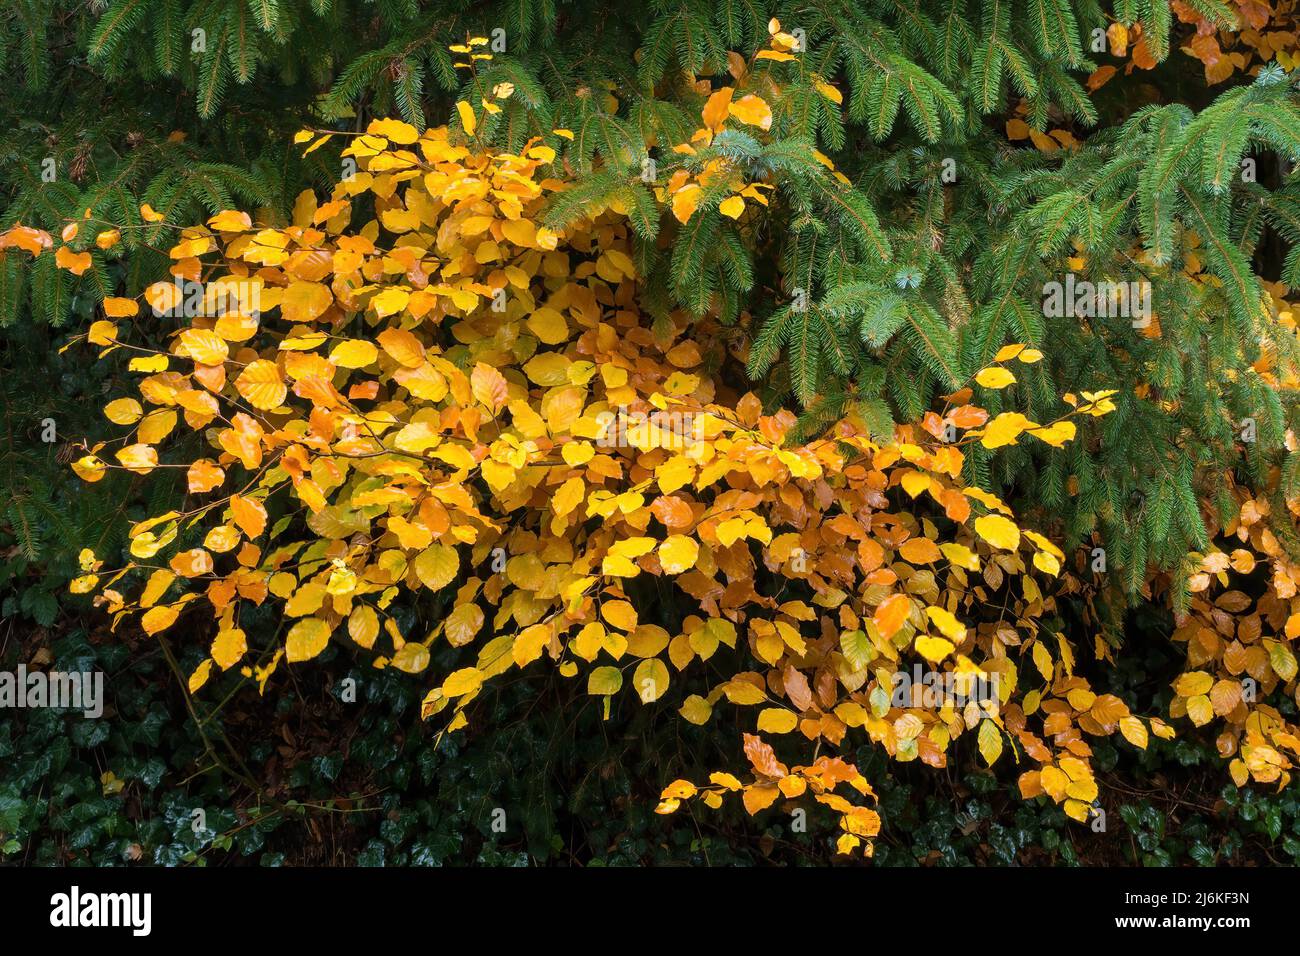 Feuilles d'arbre de hêtre commun jaune vif (Fagus sylvatica) en automne dans le district des lacs anglais, Cumbria, Angleterre, Royaume-Uni Banque D'Images